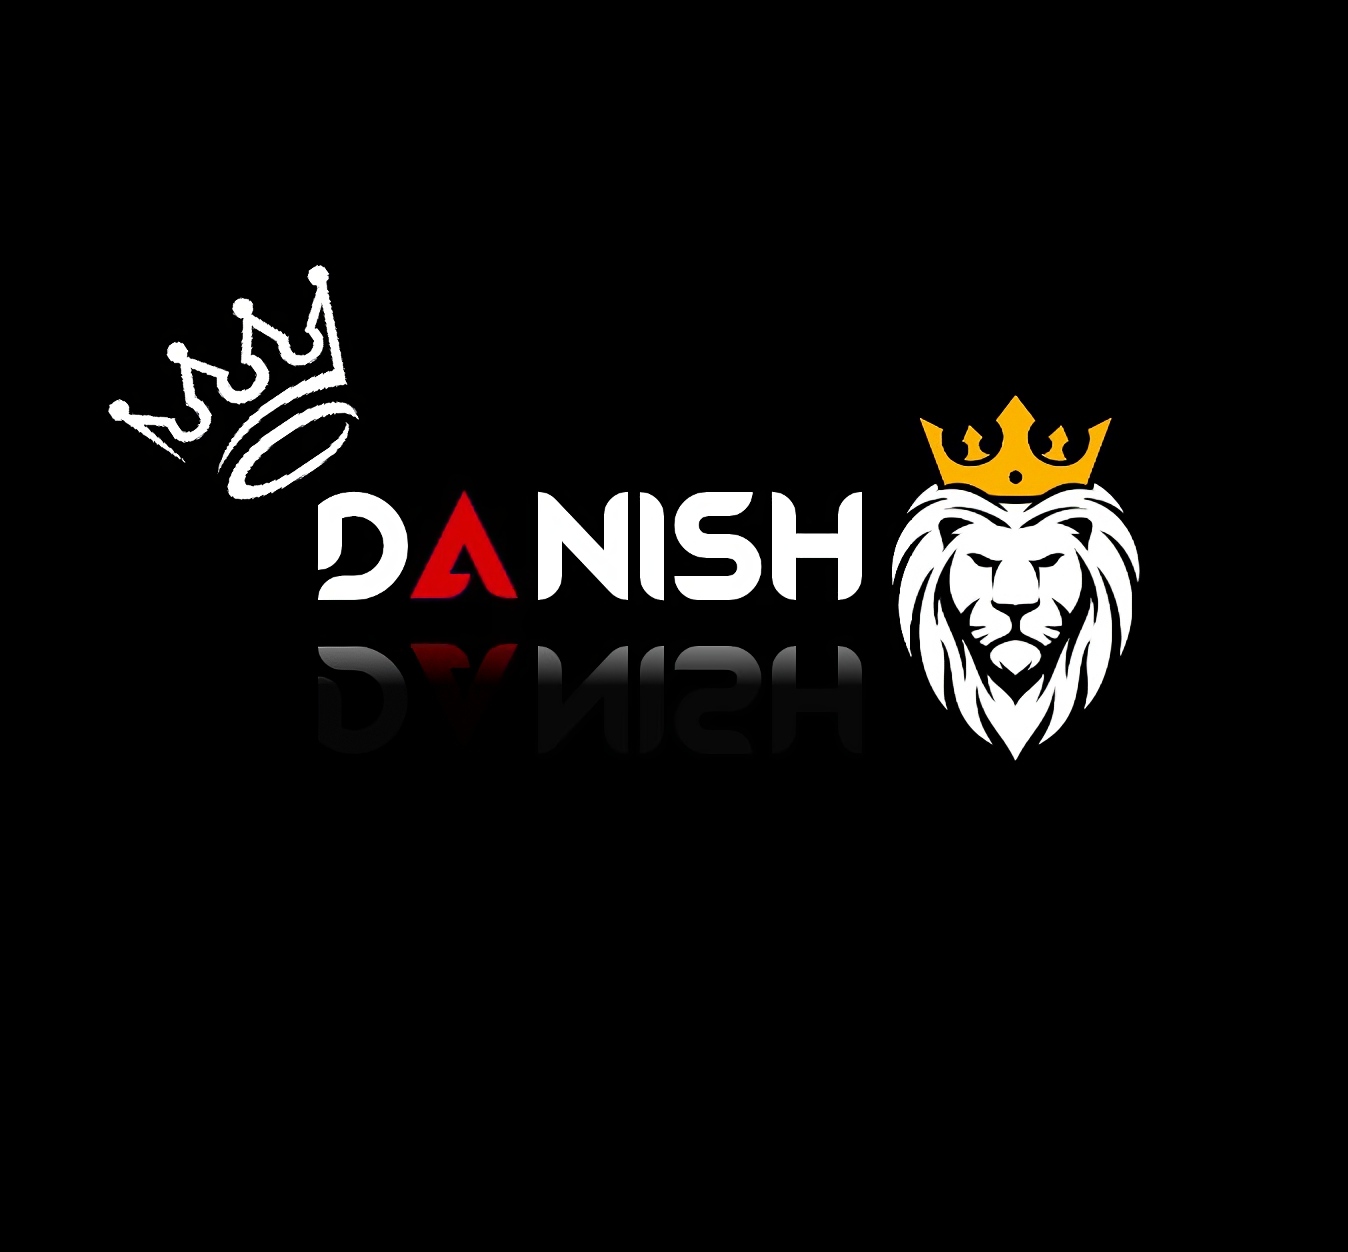 Danish Name - name danish